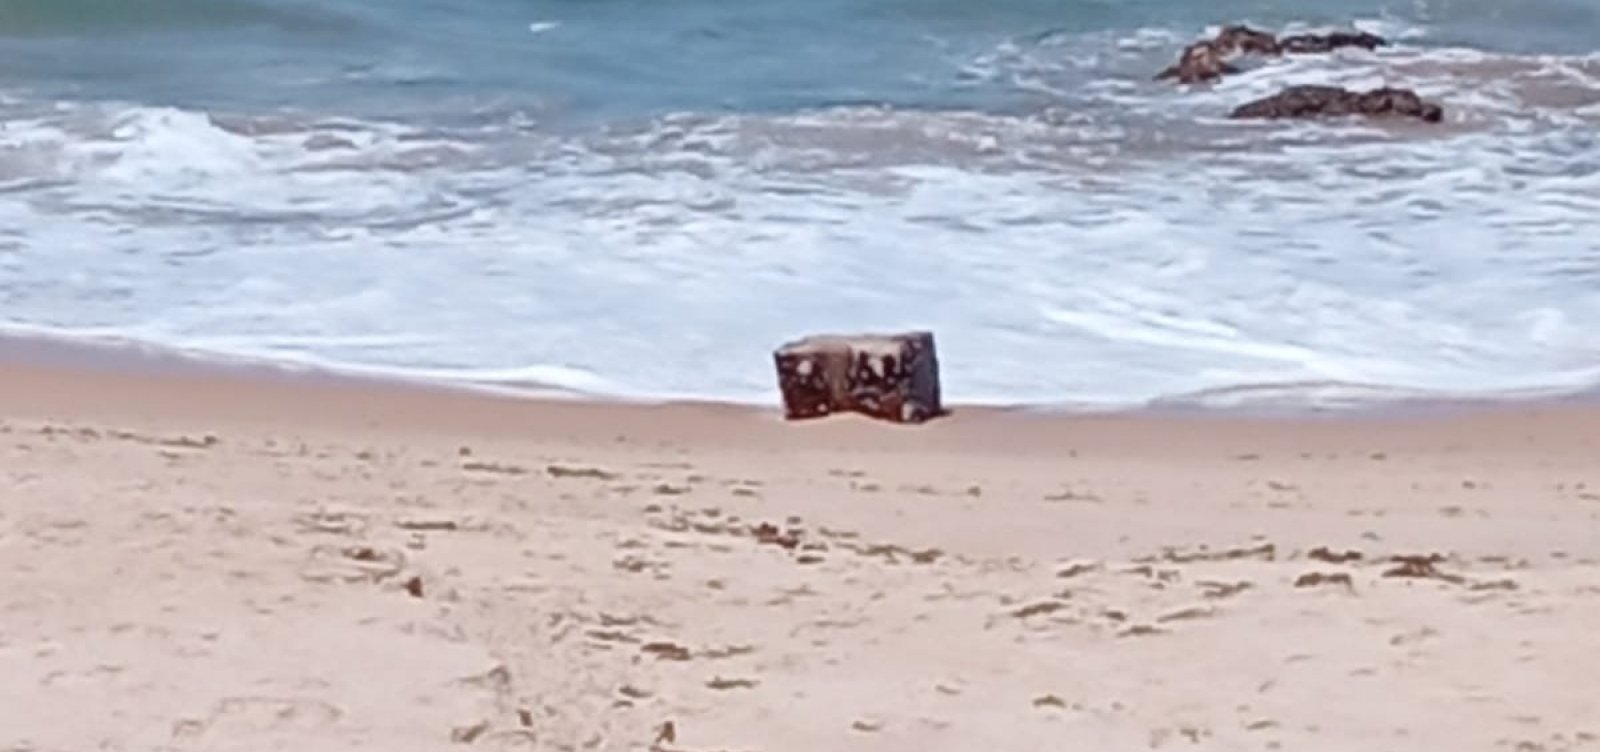 Novas "caixas misteriosas" são encontradas em praia da Pituba, em Salvador 